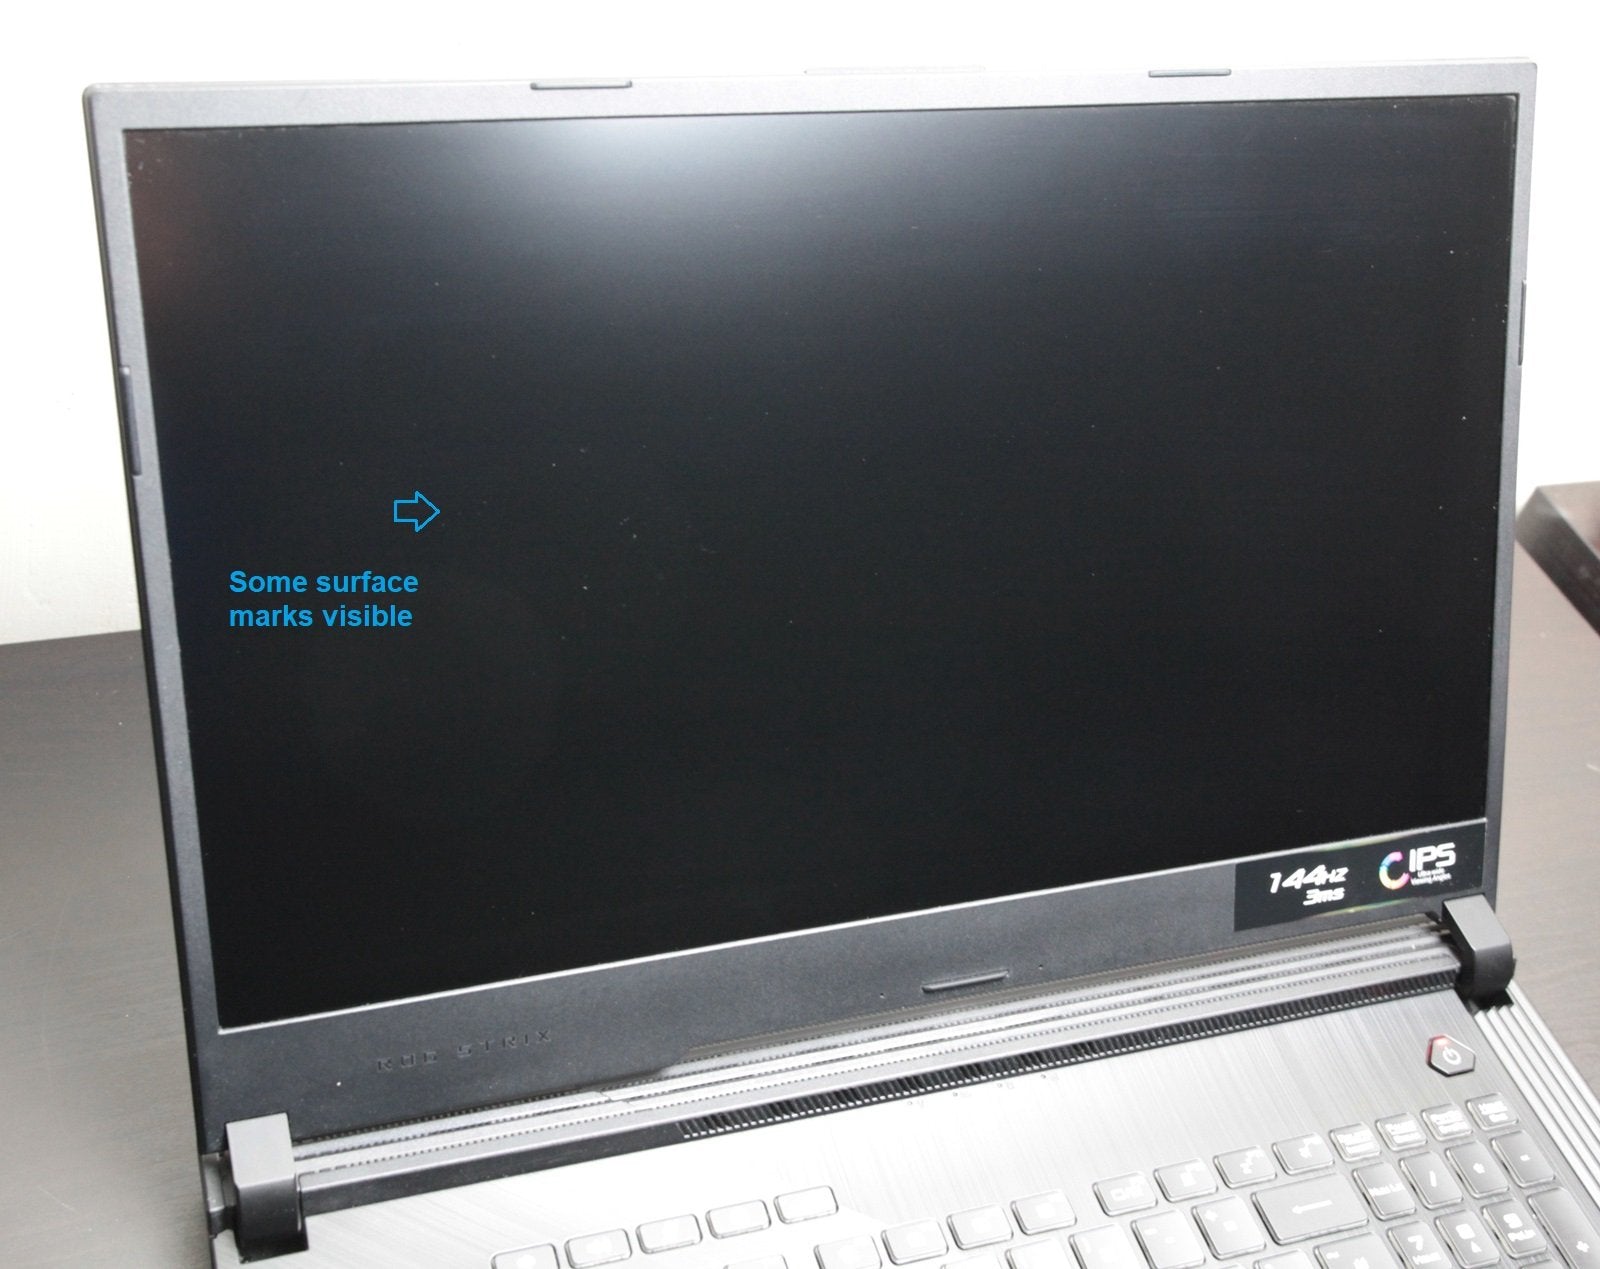 ASUS Strix G 17.3" Gaming Laptop: GTX 1660 Ti, i7-9750H, 16GB RAM, 1TB SSD - CruiseTech